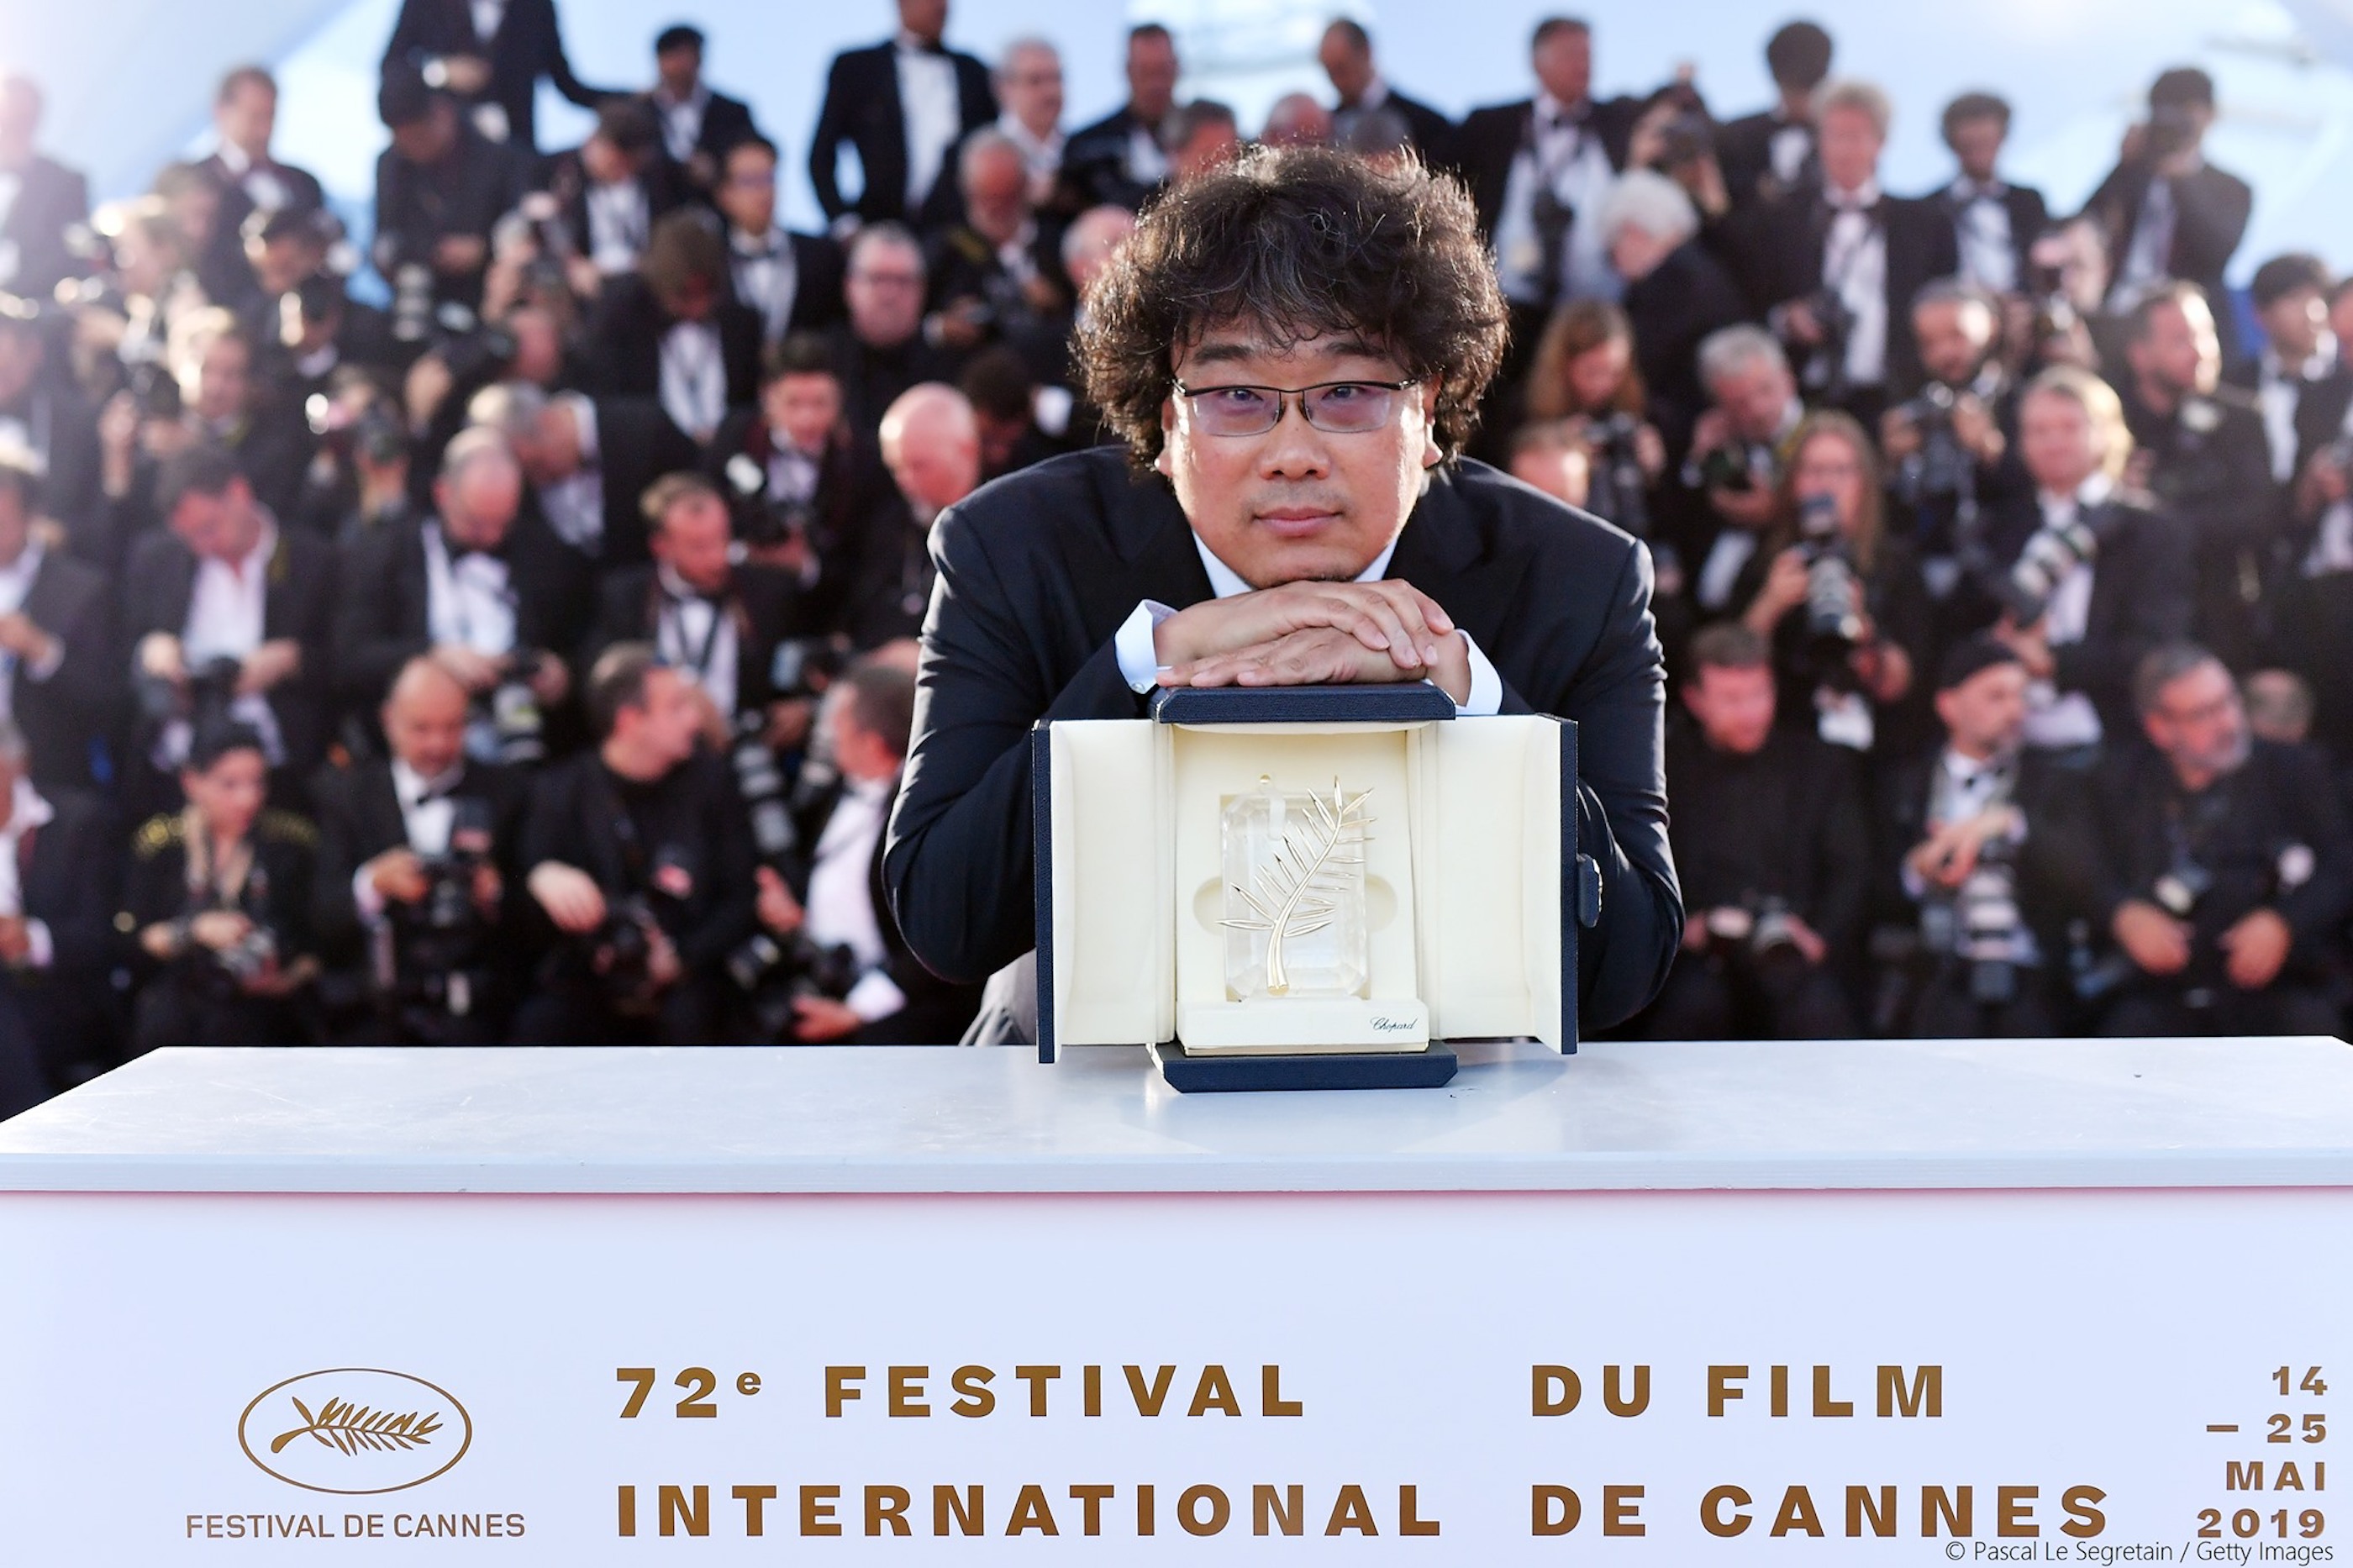 韓國影史第一 《寄生上流》勇奪坎城金棕櫚最高殊榮  導演奉俊昊：沒想過有天能摸到這座獎